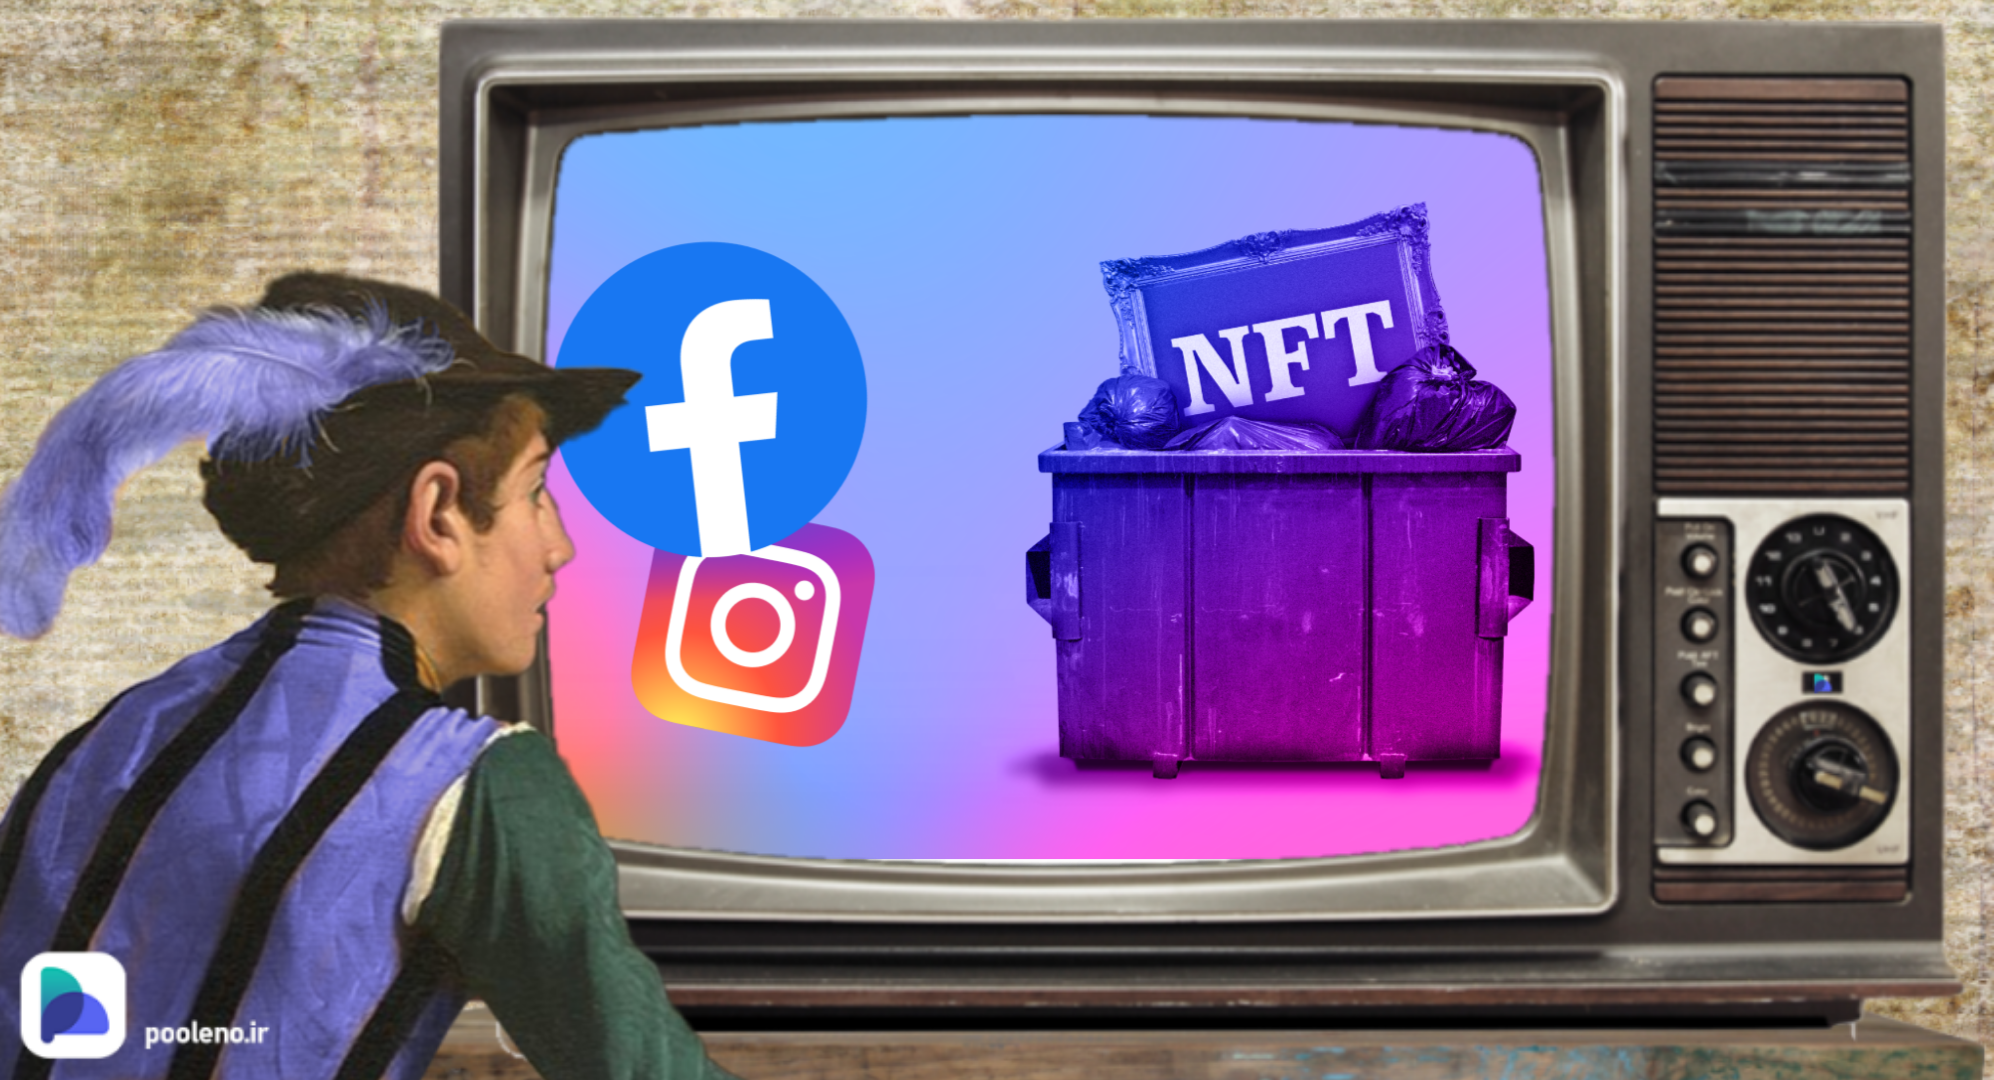 حذف گزینه NFT در اینستاگرام و فیسبوک